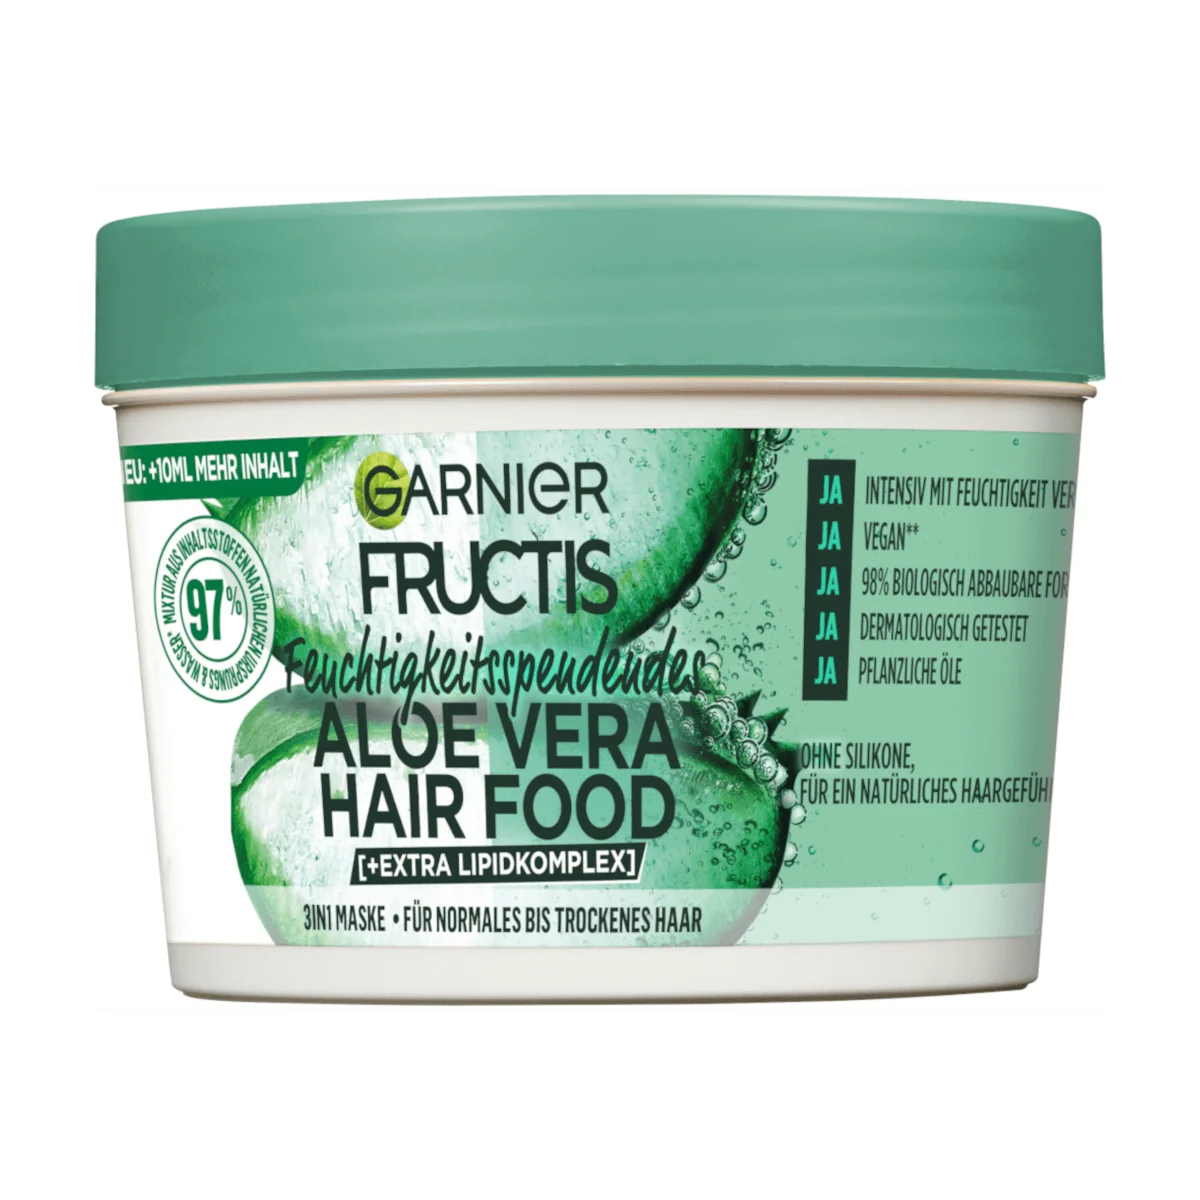 Garnier Fructis Haarkur Aloe Vera Hair Food 3in1 Maske, 400 ml